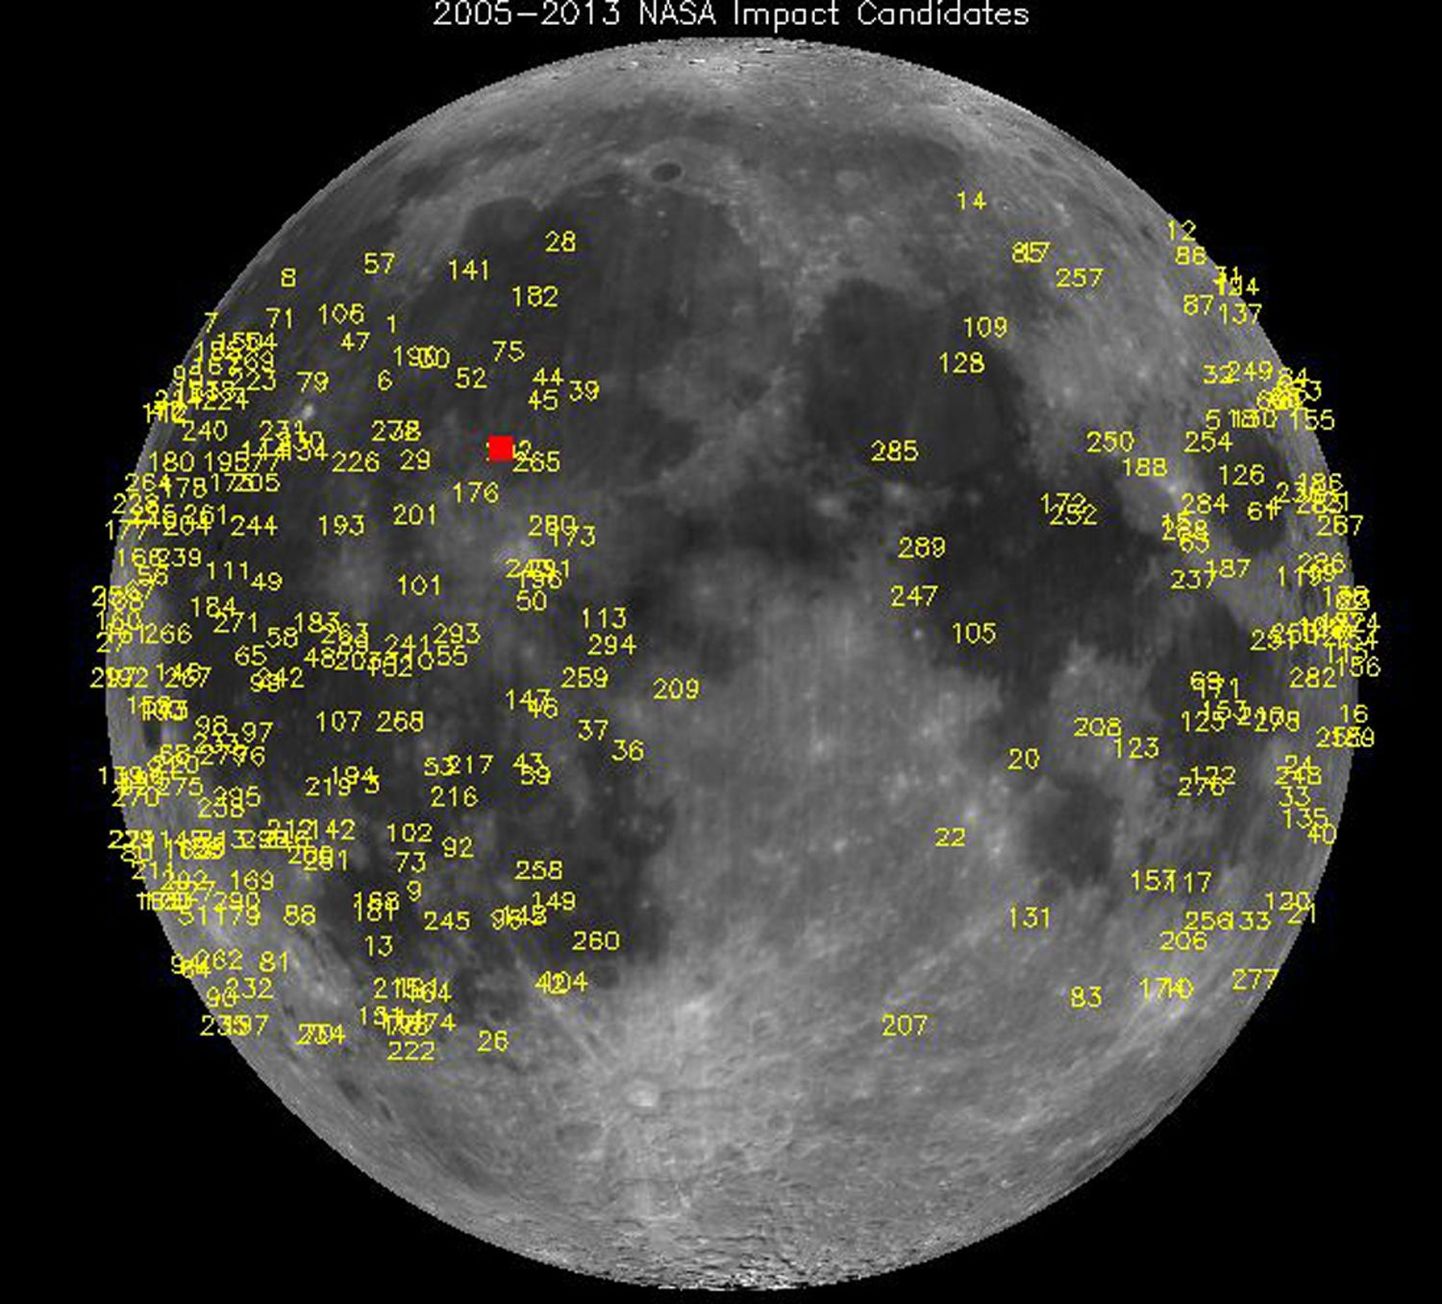 NASA automaatteleskoop jäädvustas Kuul heleda plahvatuse. Numbritega on märgitud varasemate kokkupõrgete paigad, viimane kokkupõrge on tähistatud punase tärniga